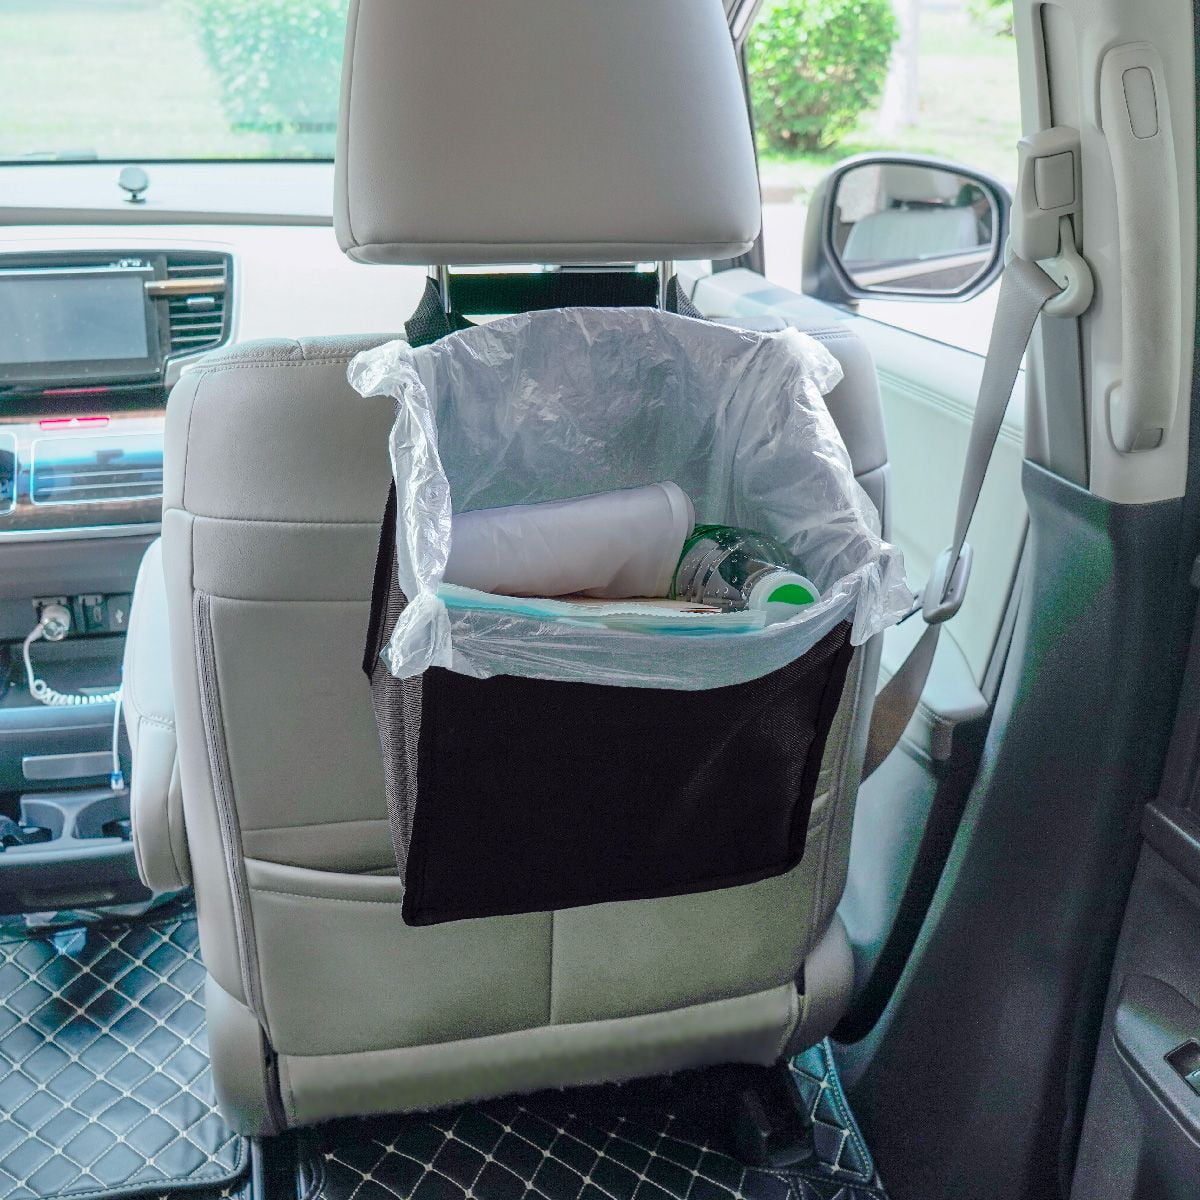 Car Organizer 'princess' Reusable Car Trash Bag 